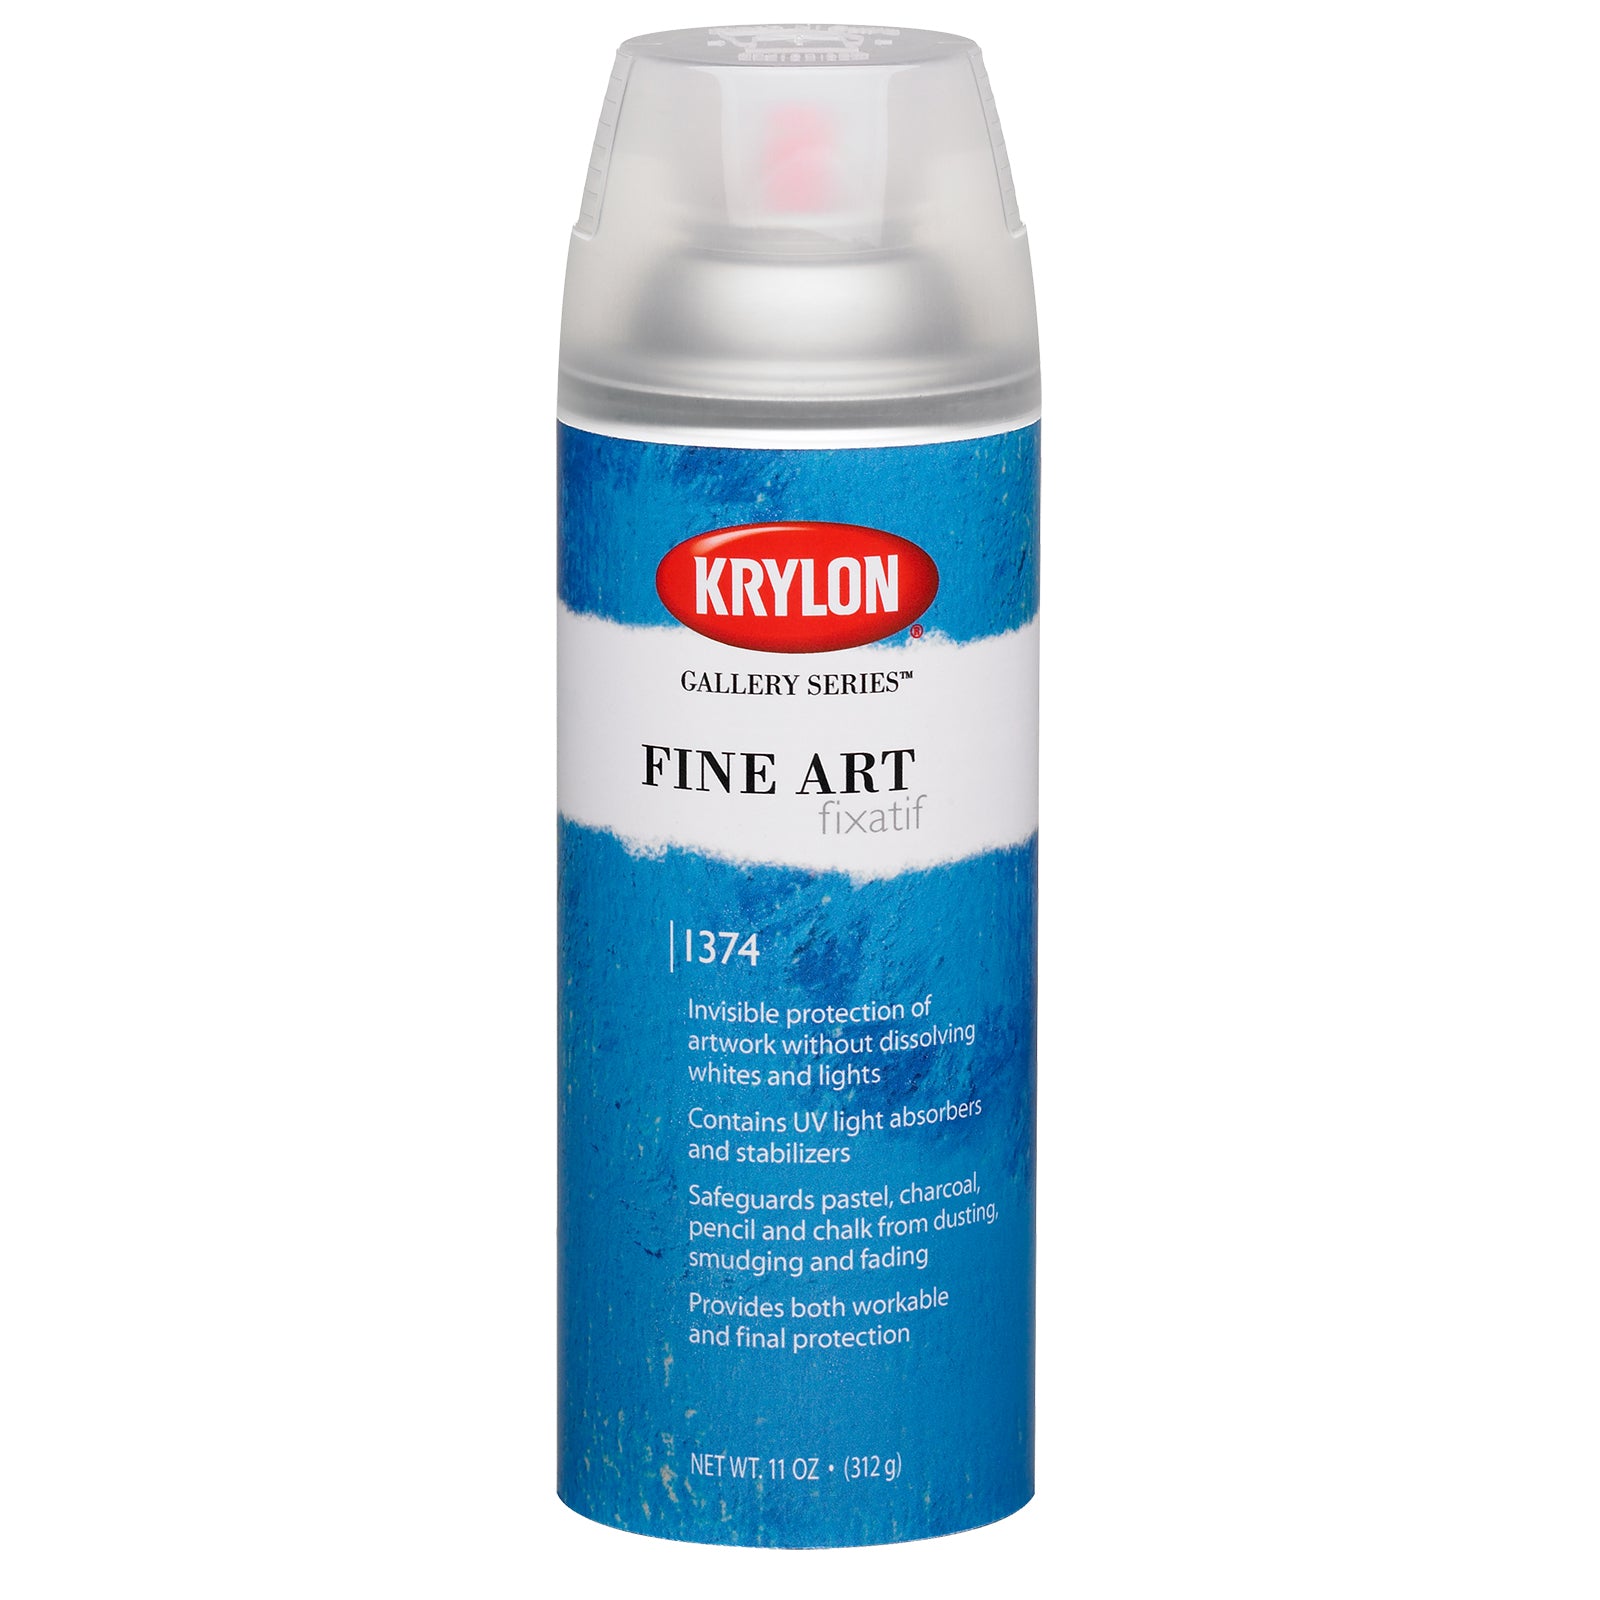 Krylon Workable Fixative Spray